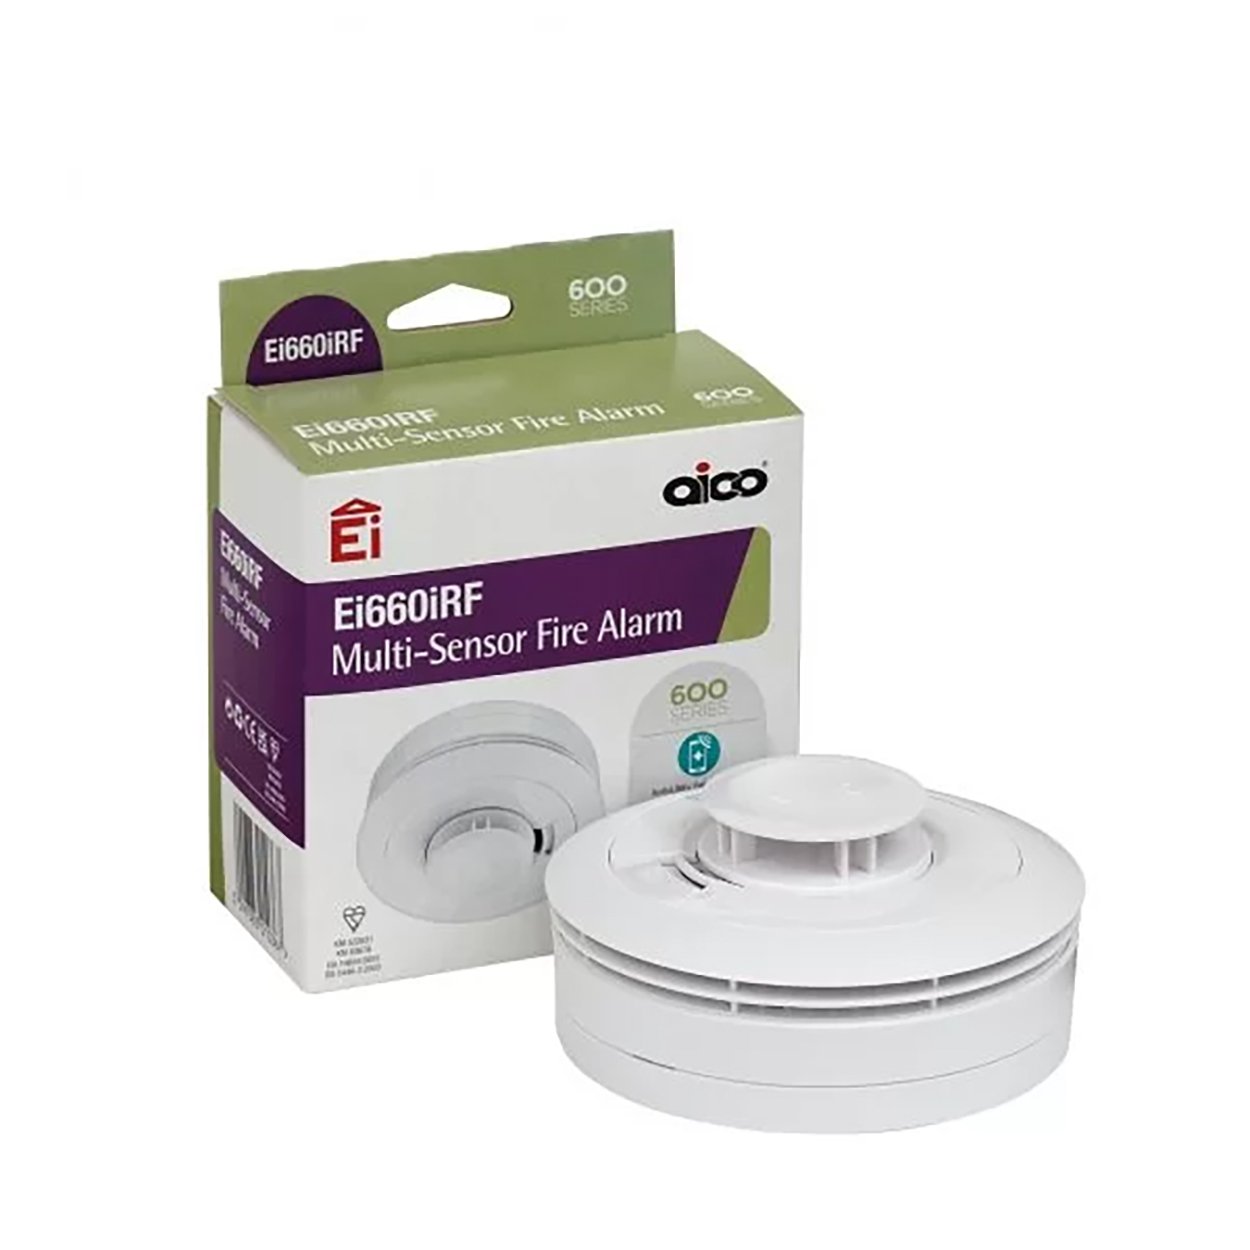 Aico Fire Alarms, Multi-Sensor Fire Alarm, Ei660iRF, Smoke Alarms Ireland